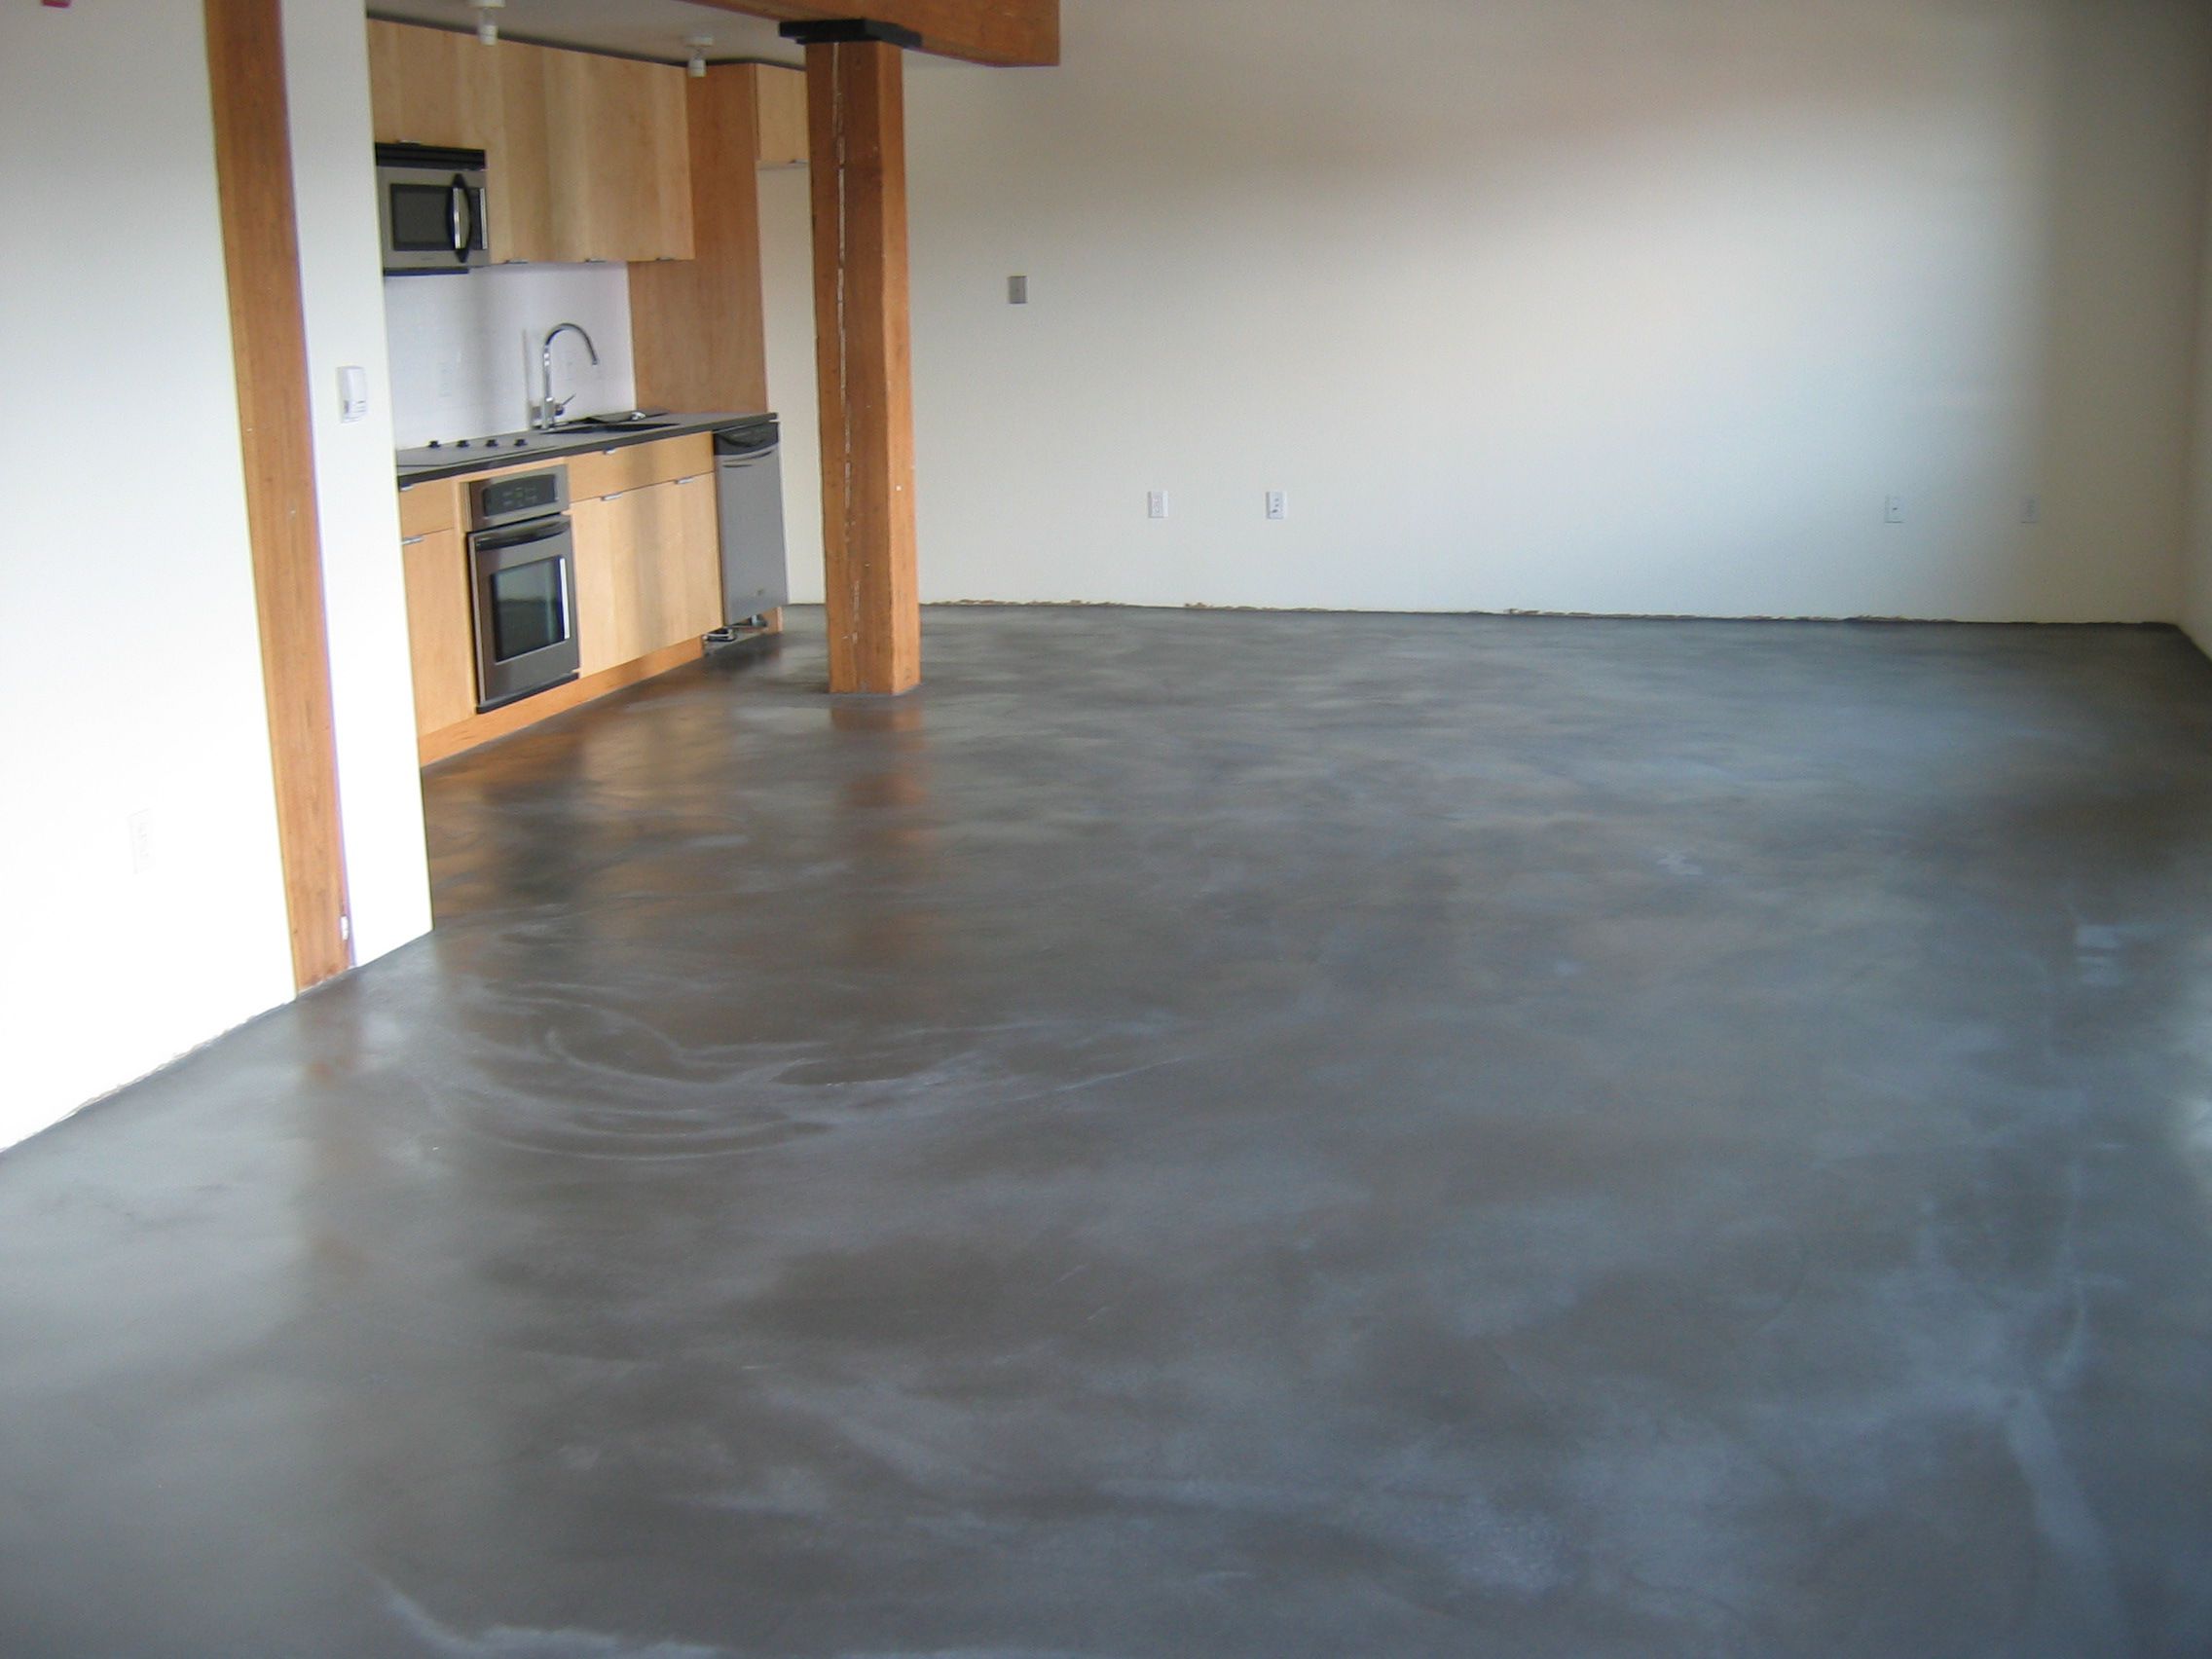 Бетонный пол в квартире как чистовой пол: Полированный бетонный пол .